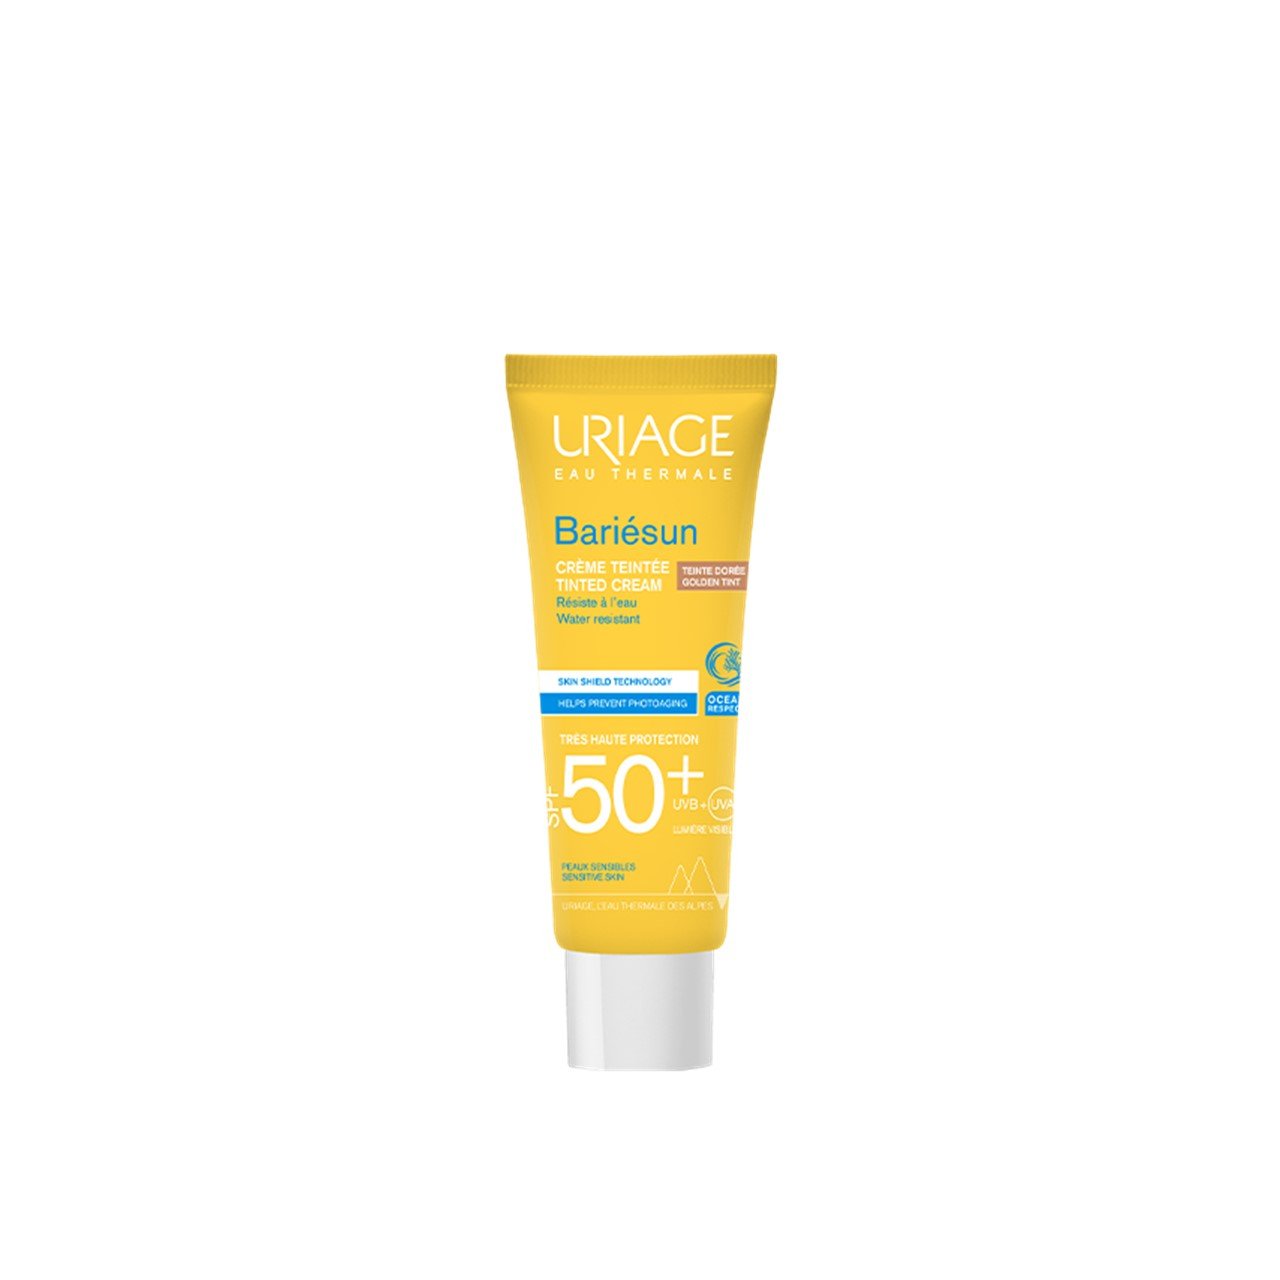 Uriage Bariésun Tinted Cream SPF50+ Golden Tint 50ml